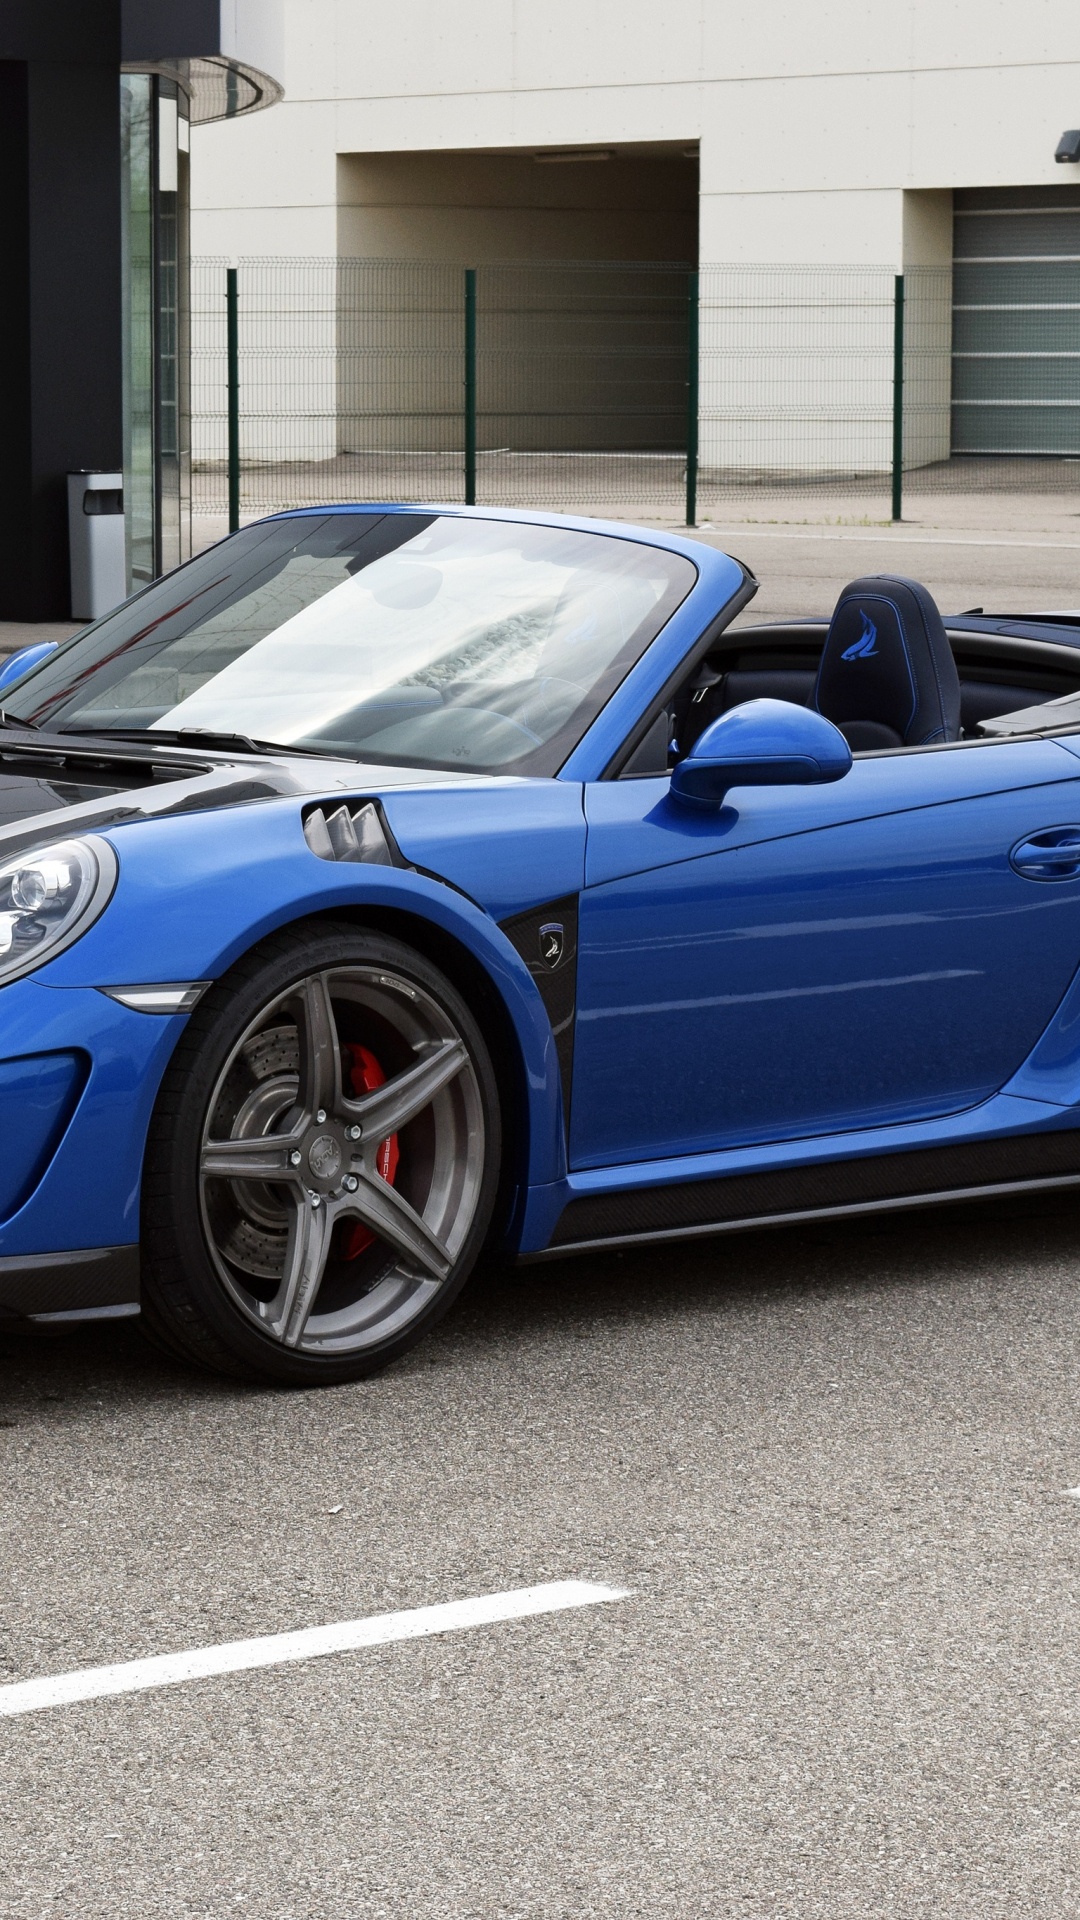 Blue Porsche 911 Parked Near Building During Daytime. Wallpaper in 1080x1920 Resolution